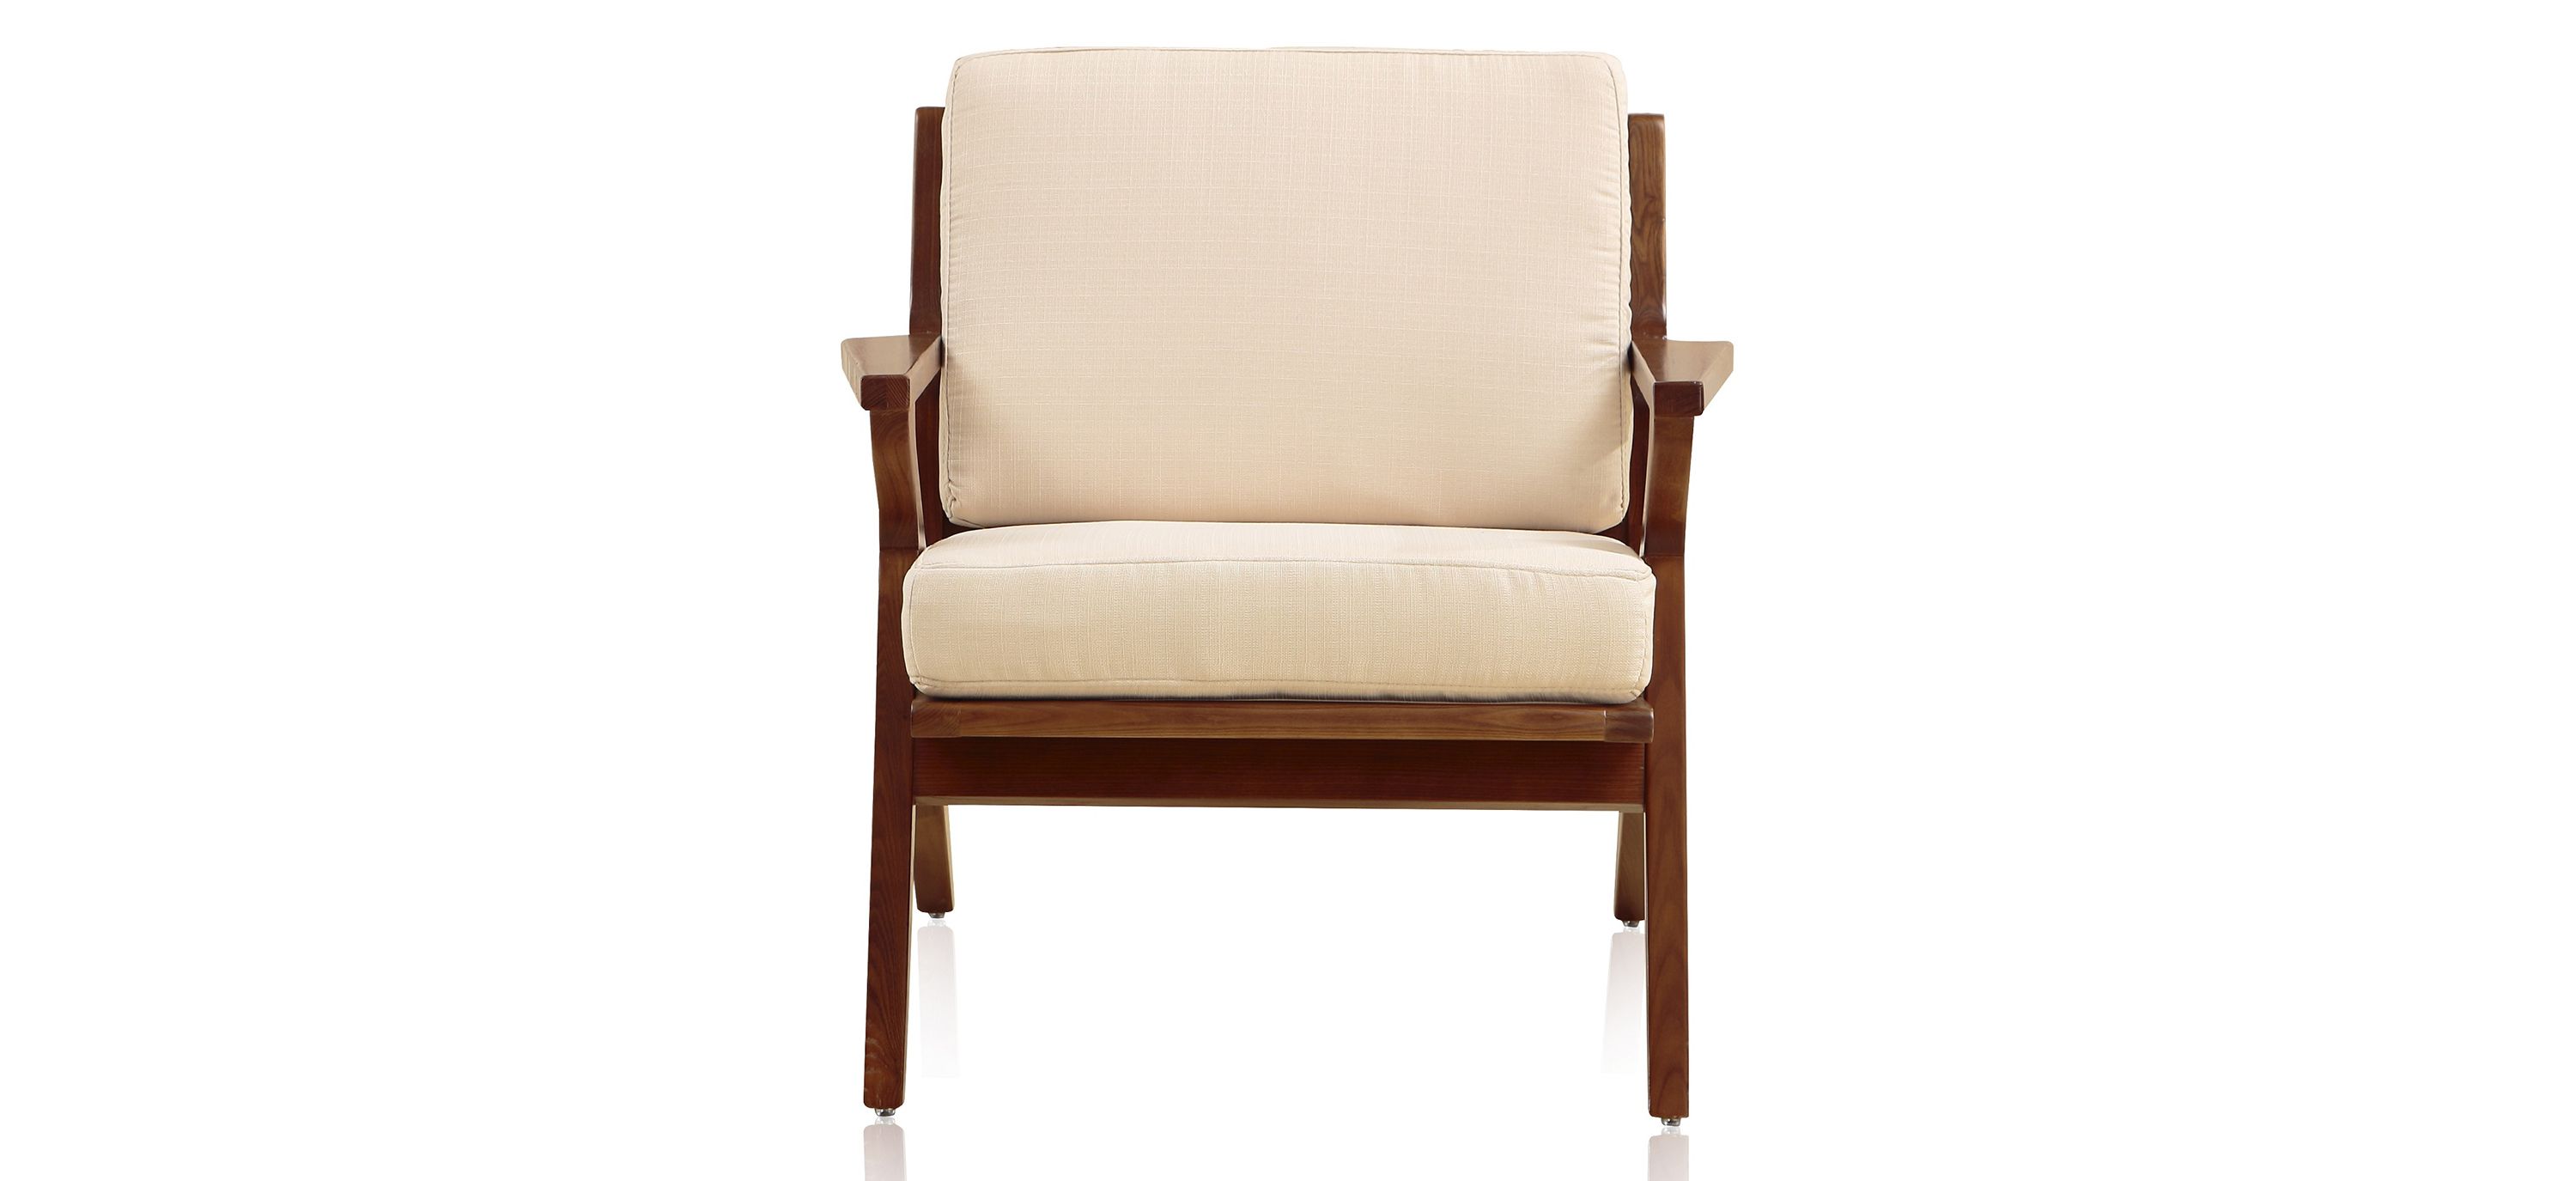 Martelle Chair